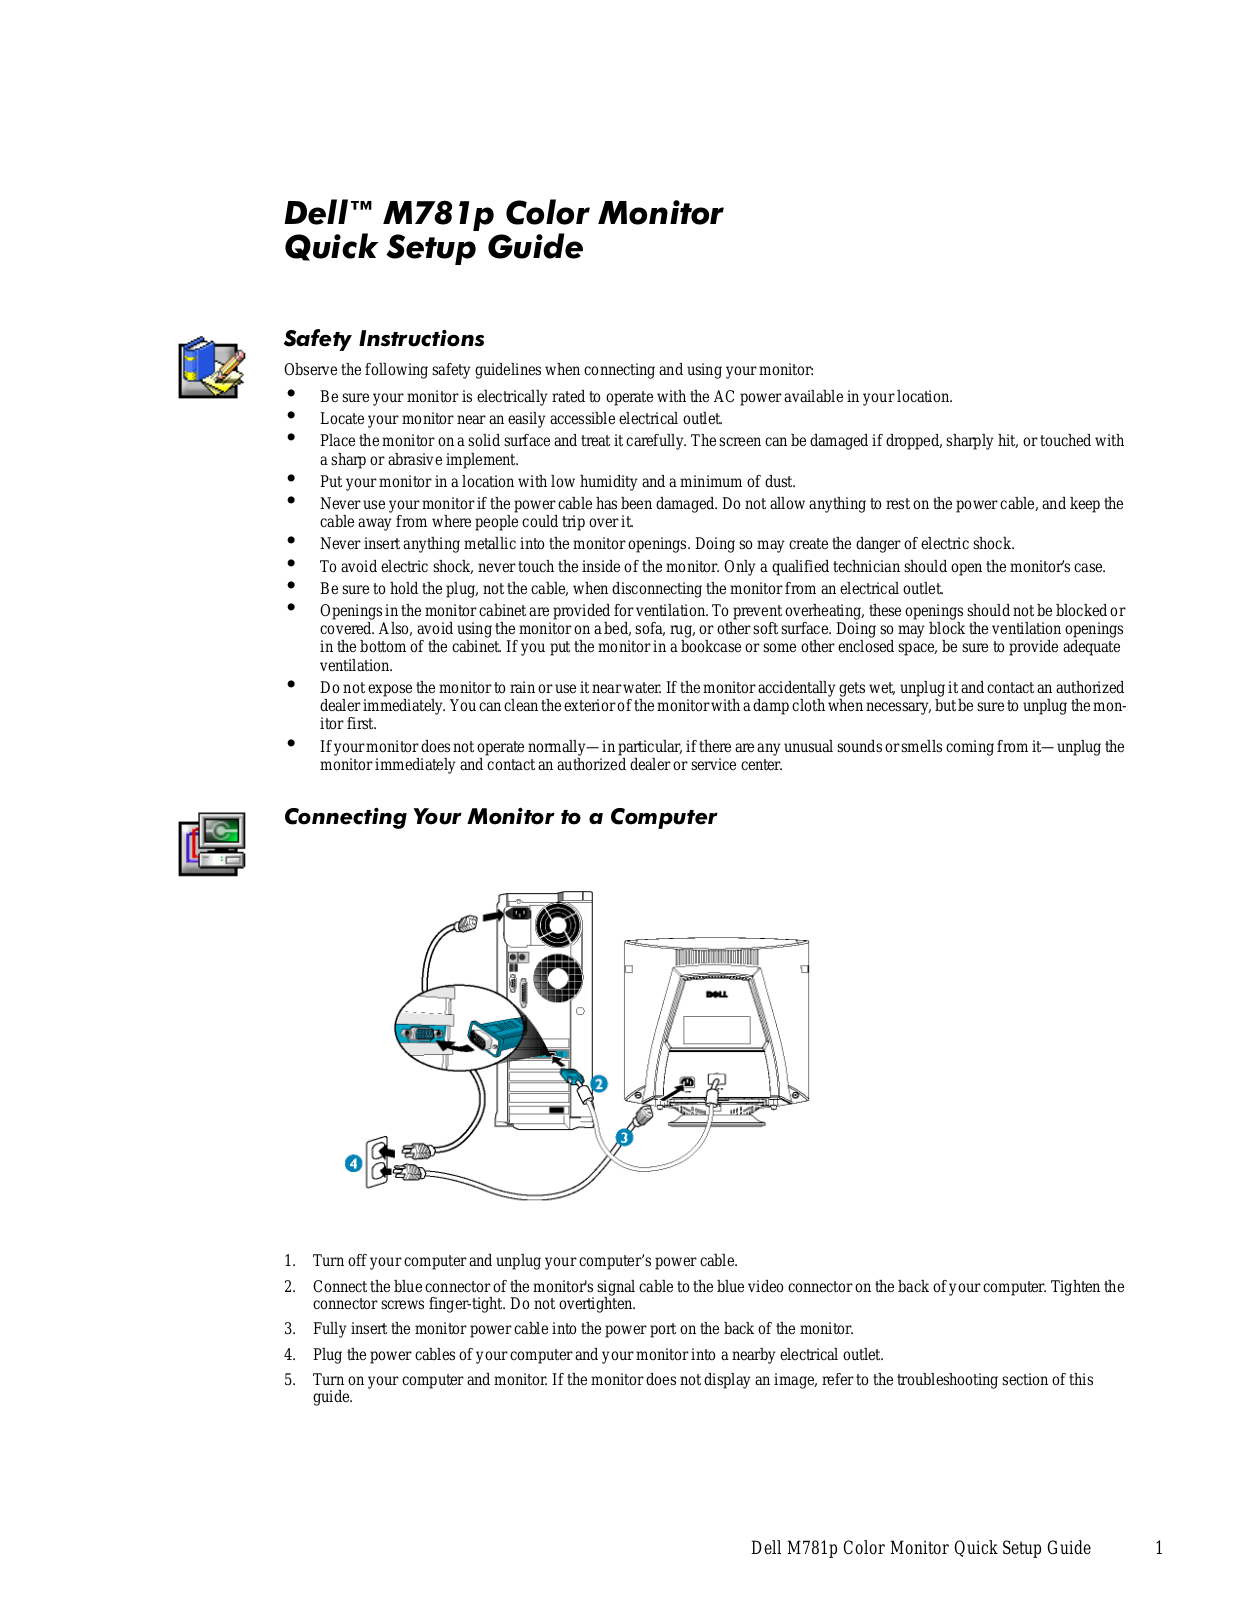 Dell M781p User Manual